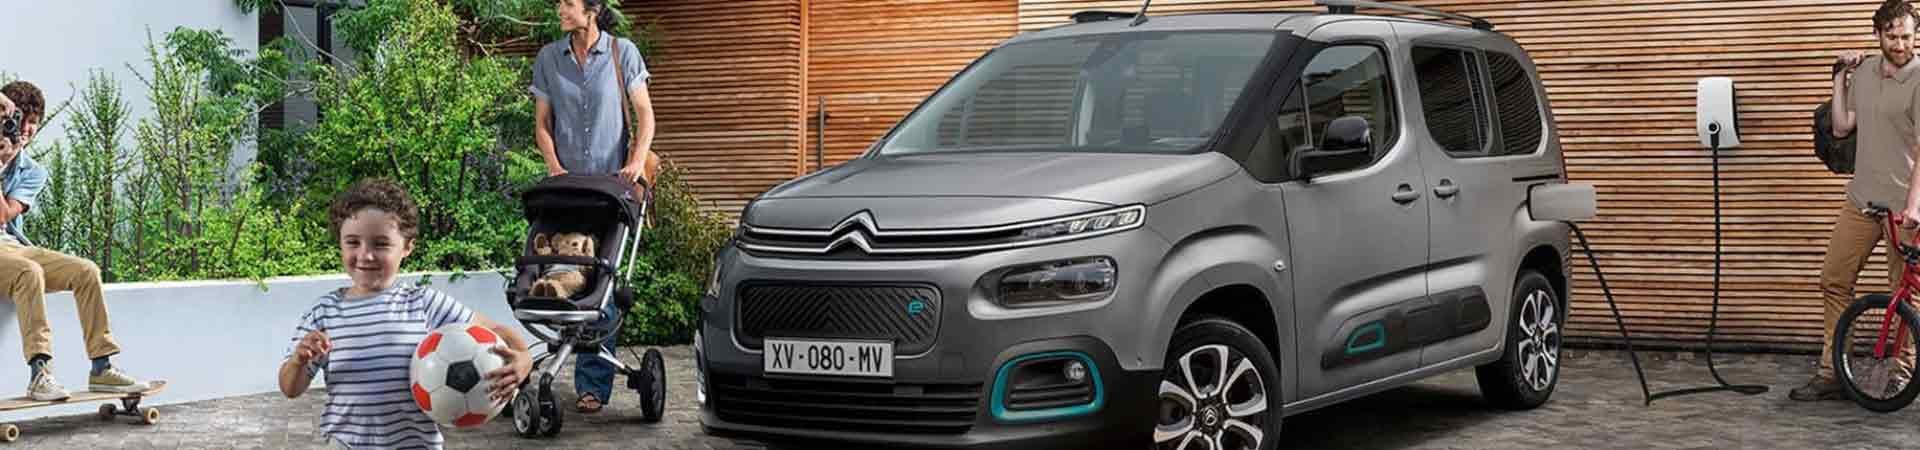 Avec le nouveau ë-Berlingo, Citroën intègre les avantages de l'électrique  au ludospace - Numerama